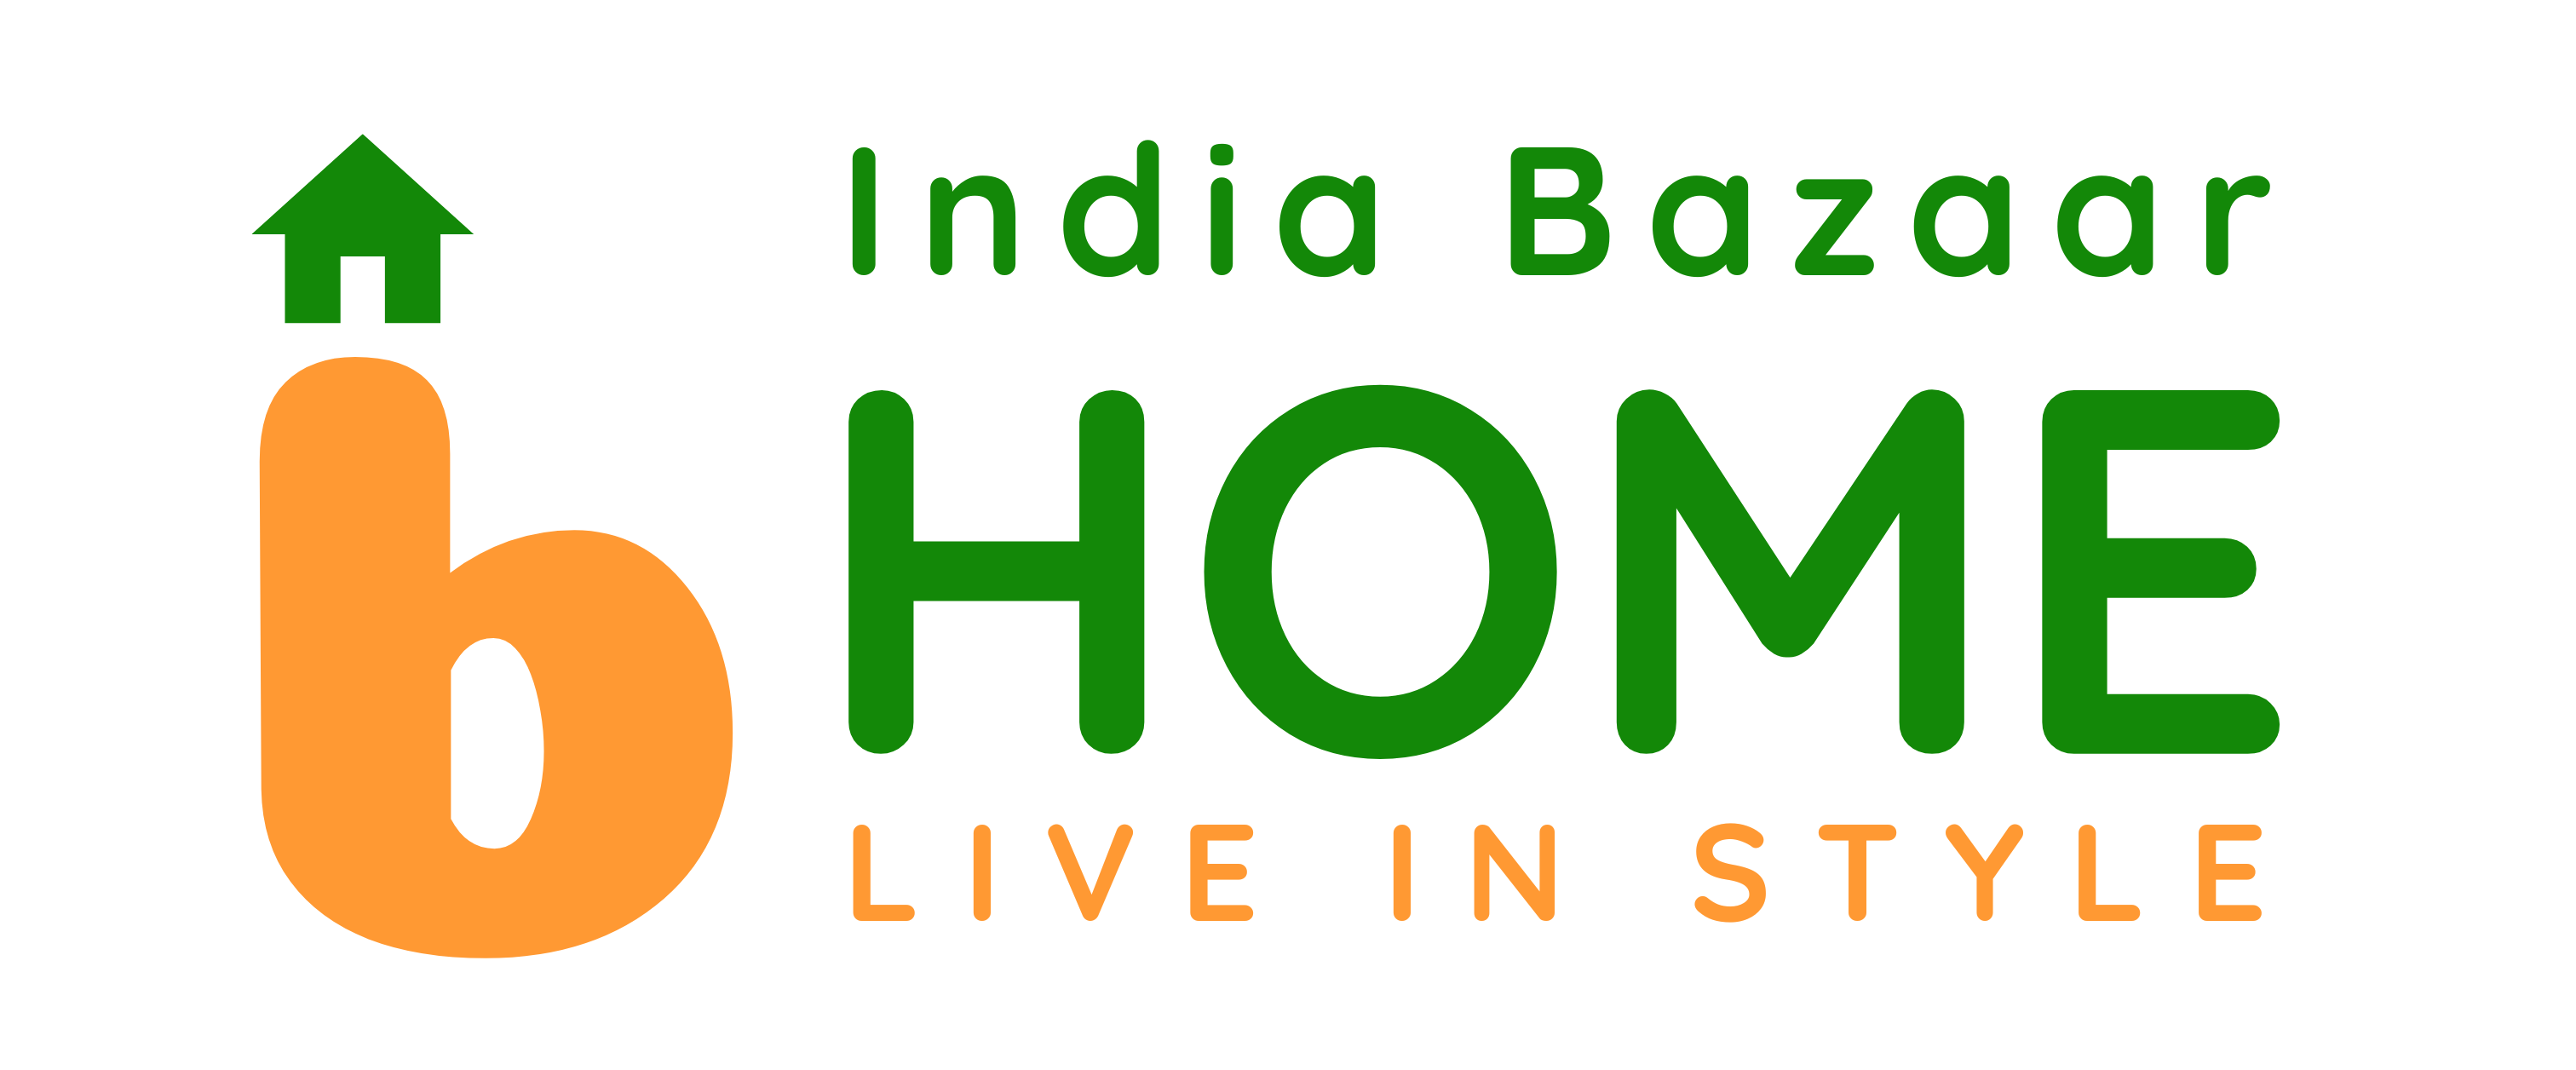 India Bazaar Home